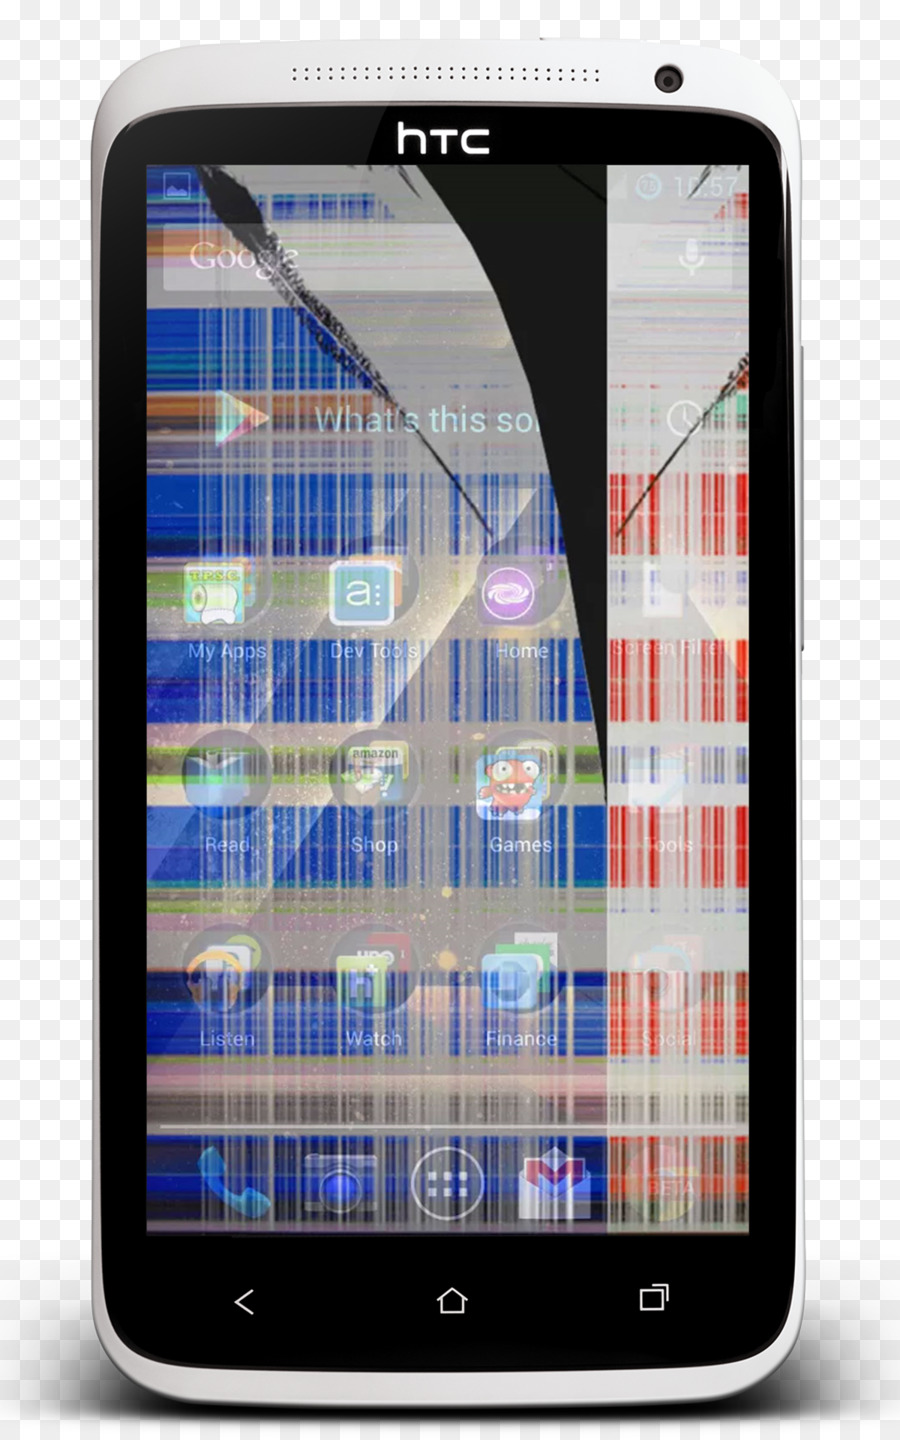 Smartphone Gebrochenen Bildschirm Streich (Smashed Screen-App) 破碎屏幕惡作劇 Streich-iPhone-Android - Smartphone